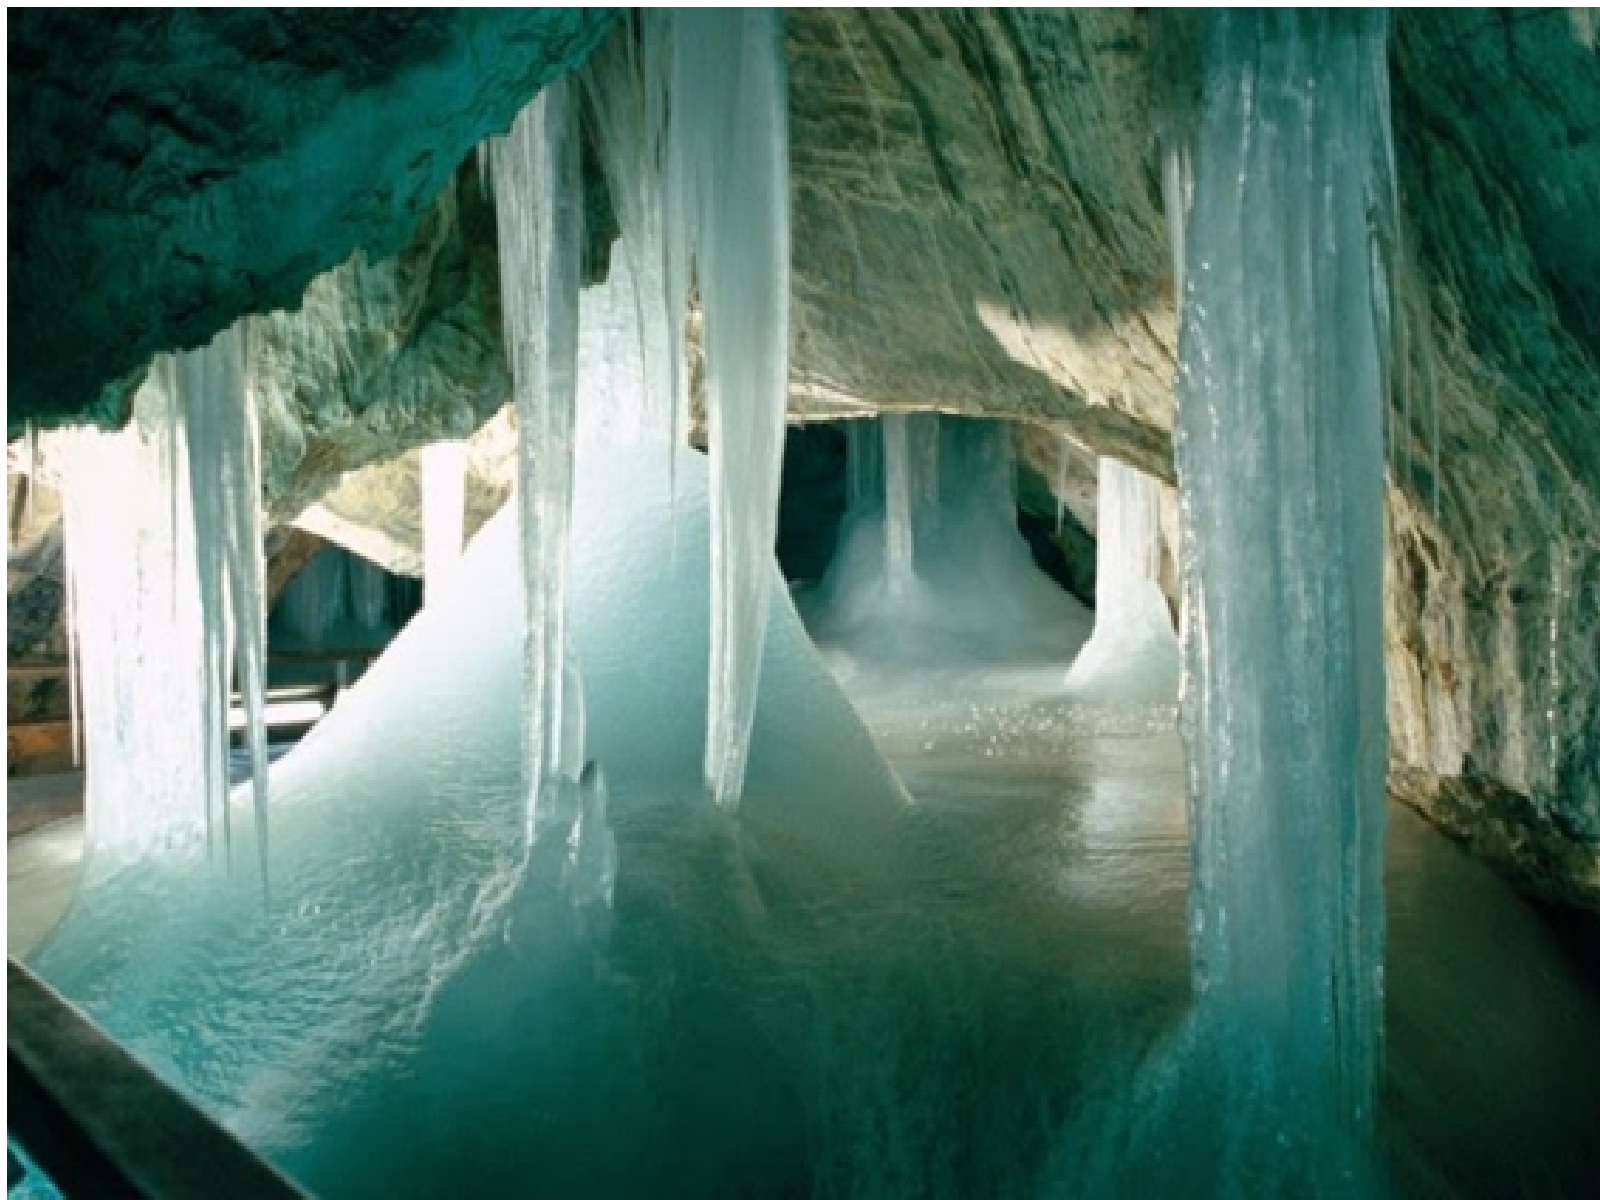 The Dobsina Ice Cave, Slovakia